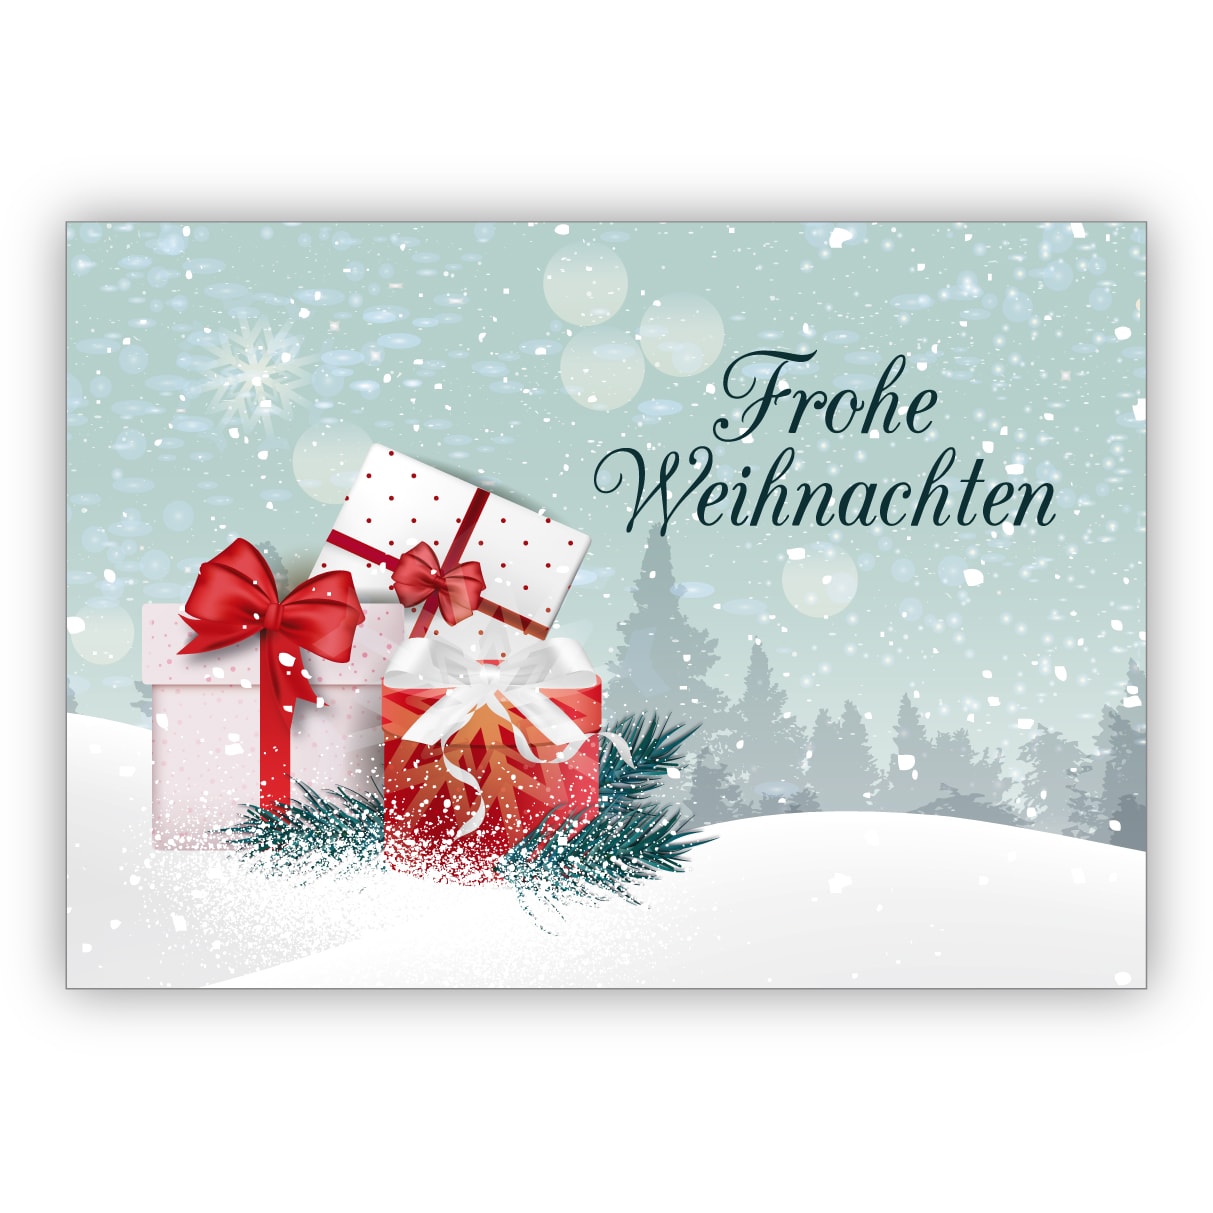 Klassische elegante Weihnachtskarte mit Geschenken und Schnee Landschaft: Frohe Weihnachten